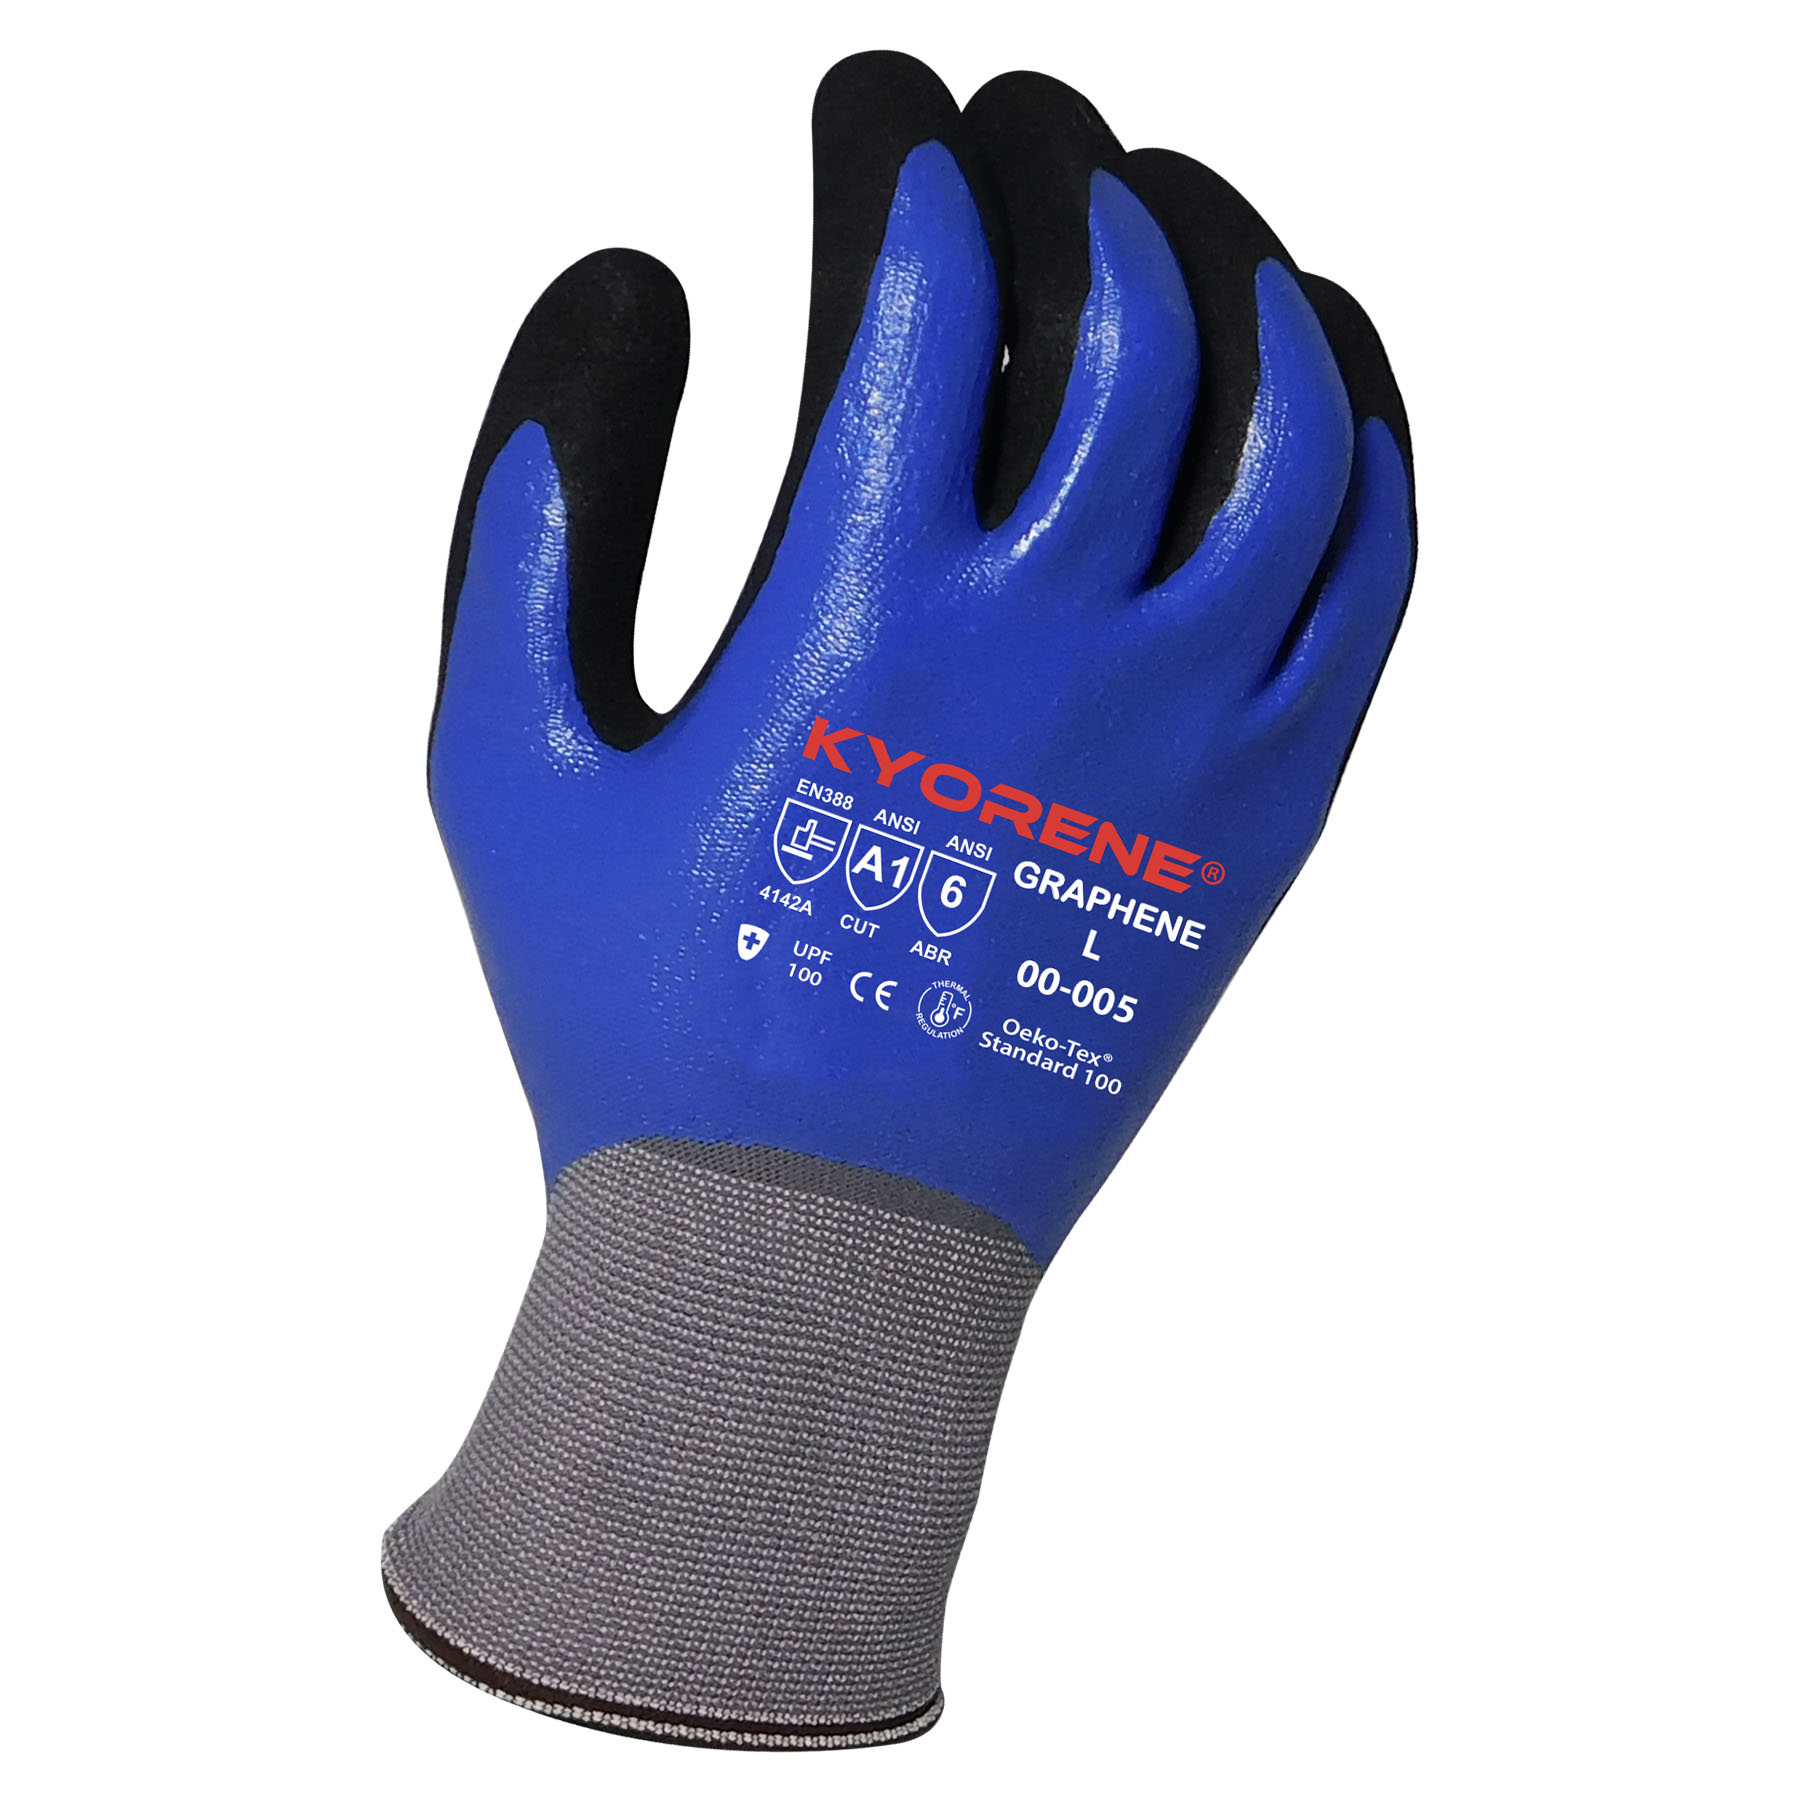 Armor Guys Kyorene® Gloves - Gloves